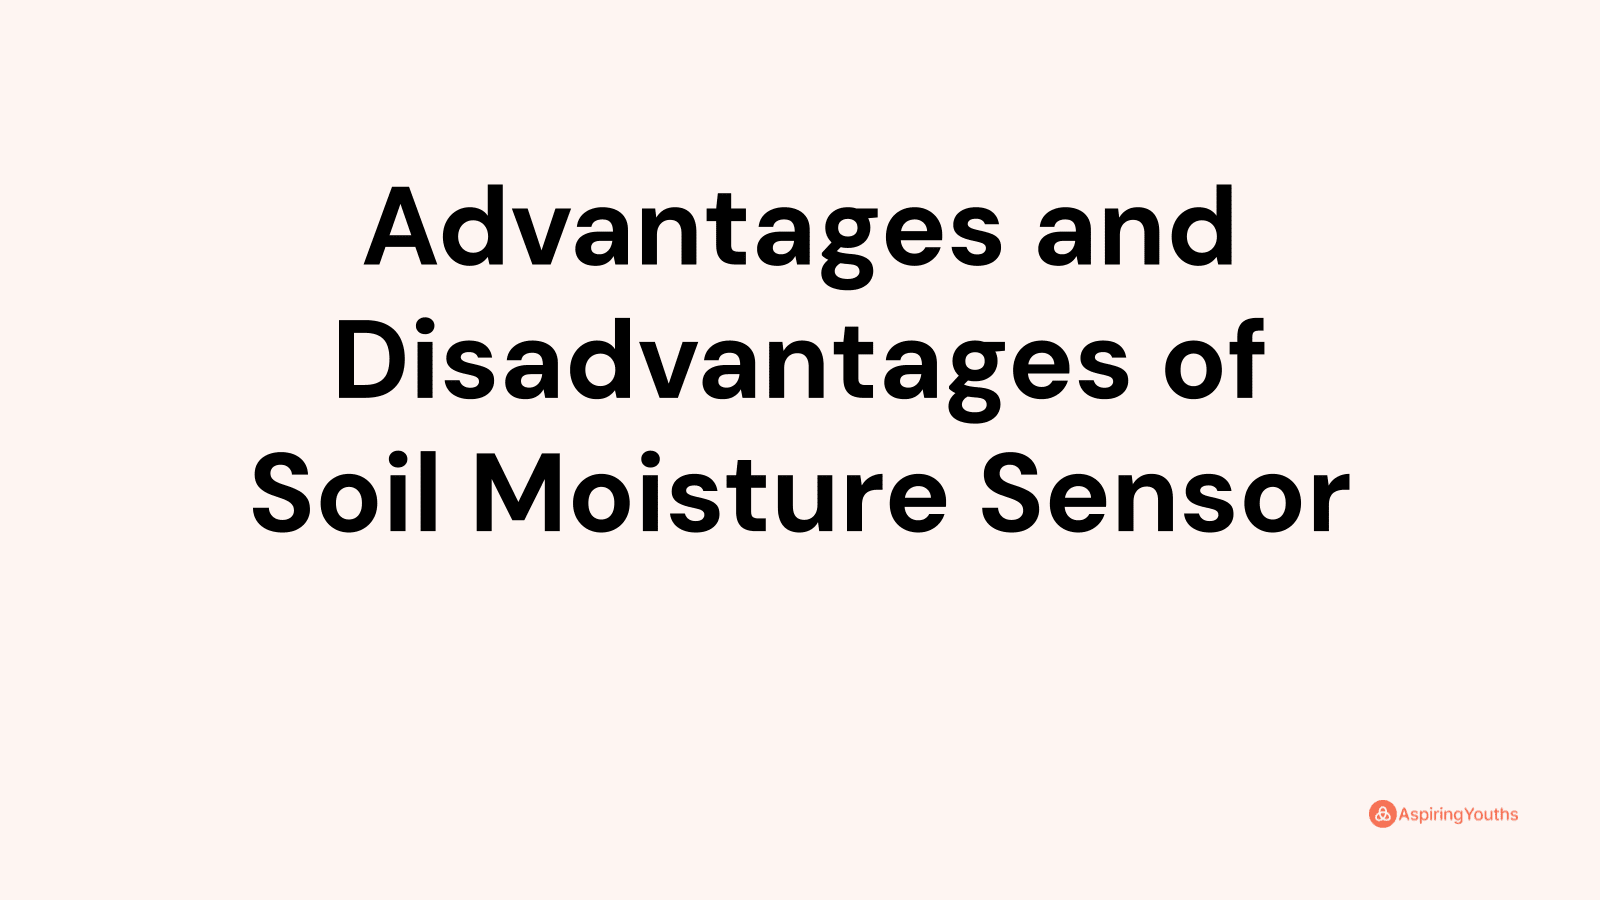 Advantages and disadvantages of Soil Moisture Sensor